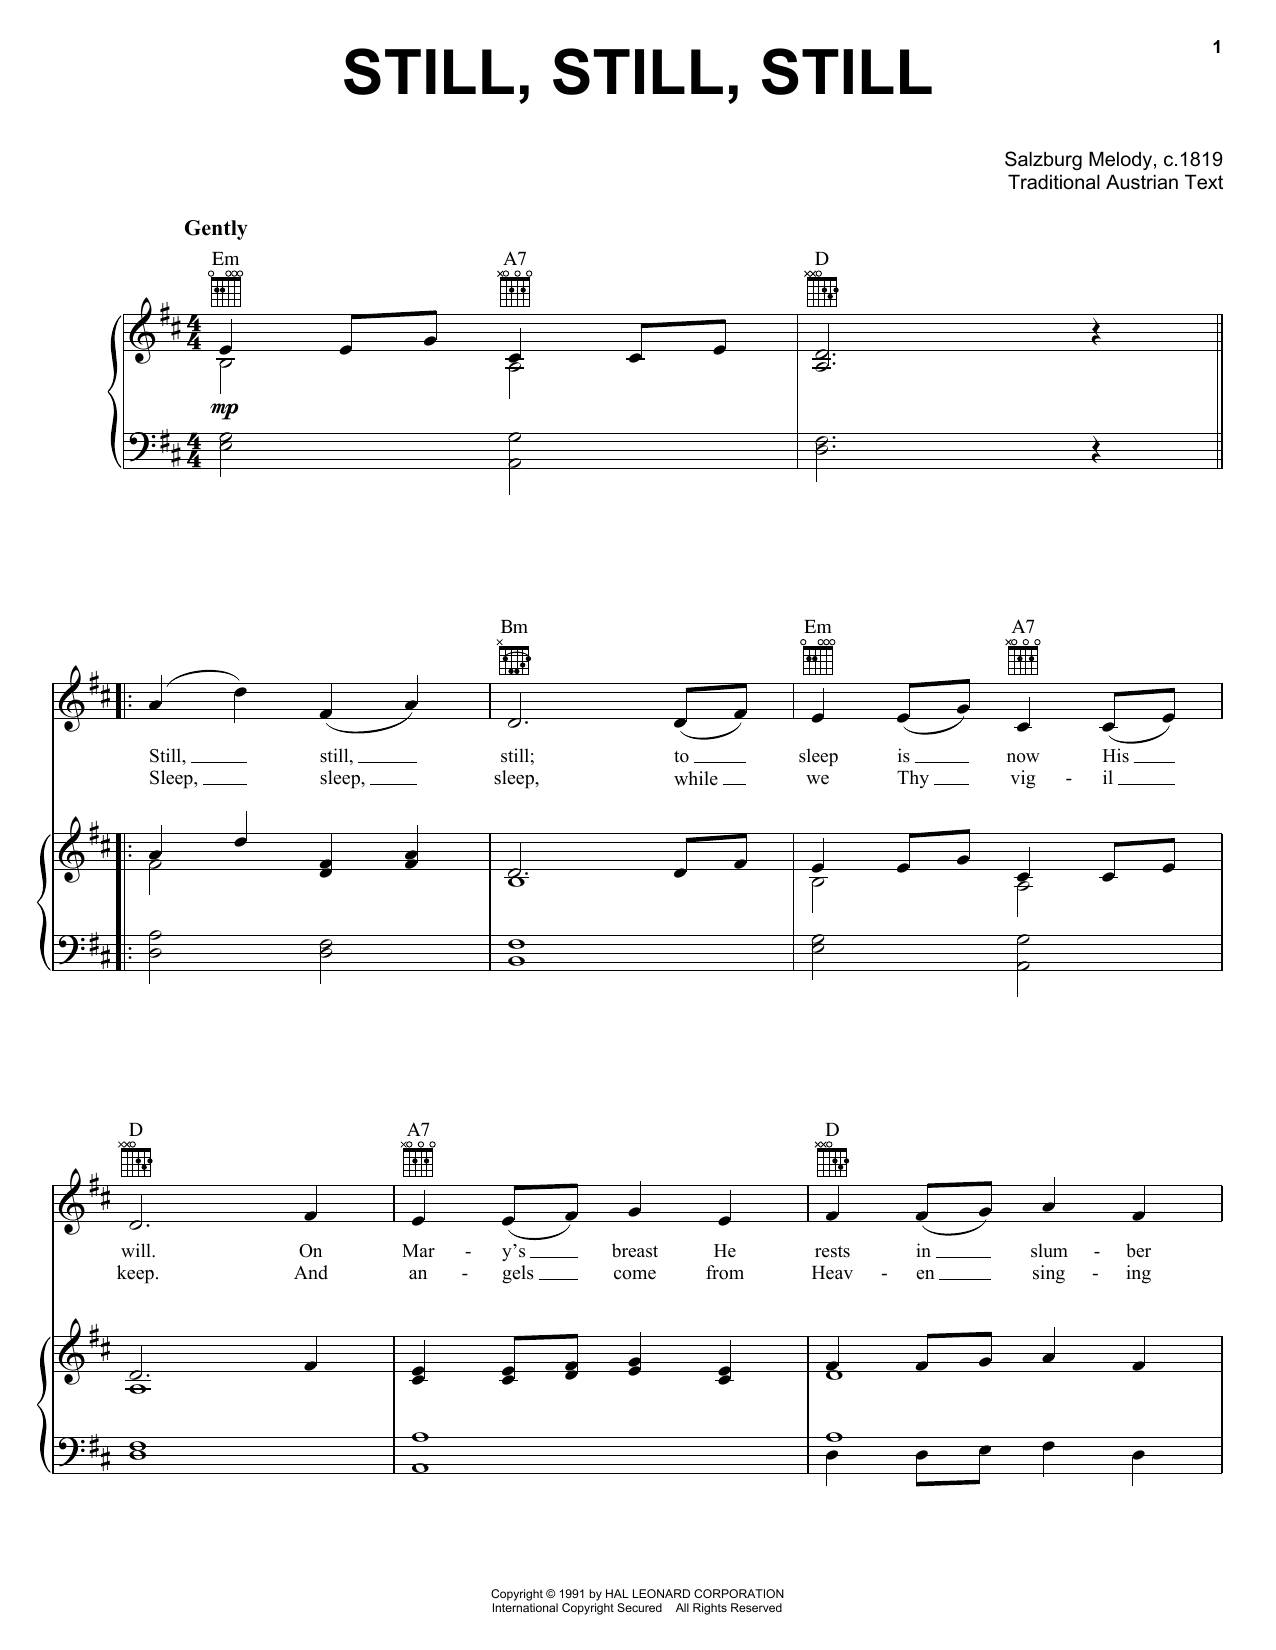 Traditional Still, Still, Still Sheet Music Notes & Chords for Lyrics & Chords - Download or Print PDF